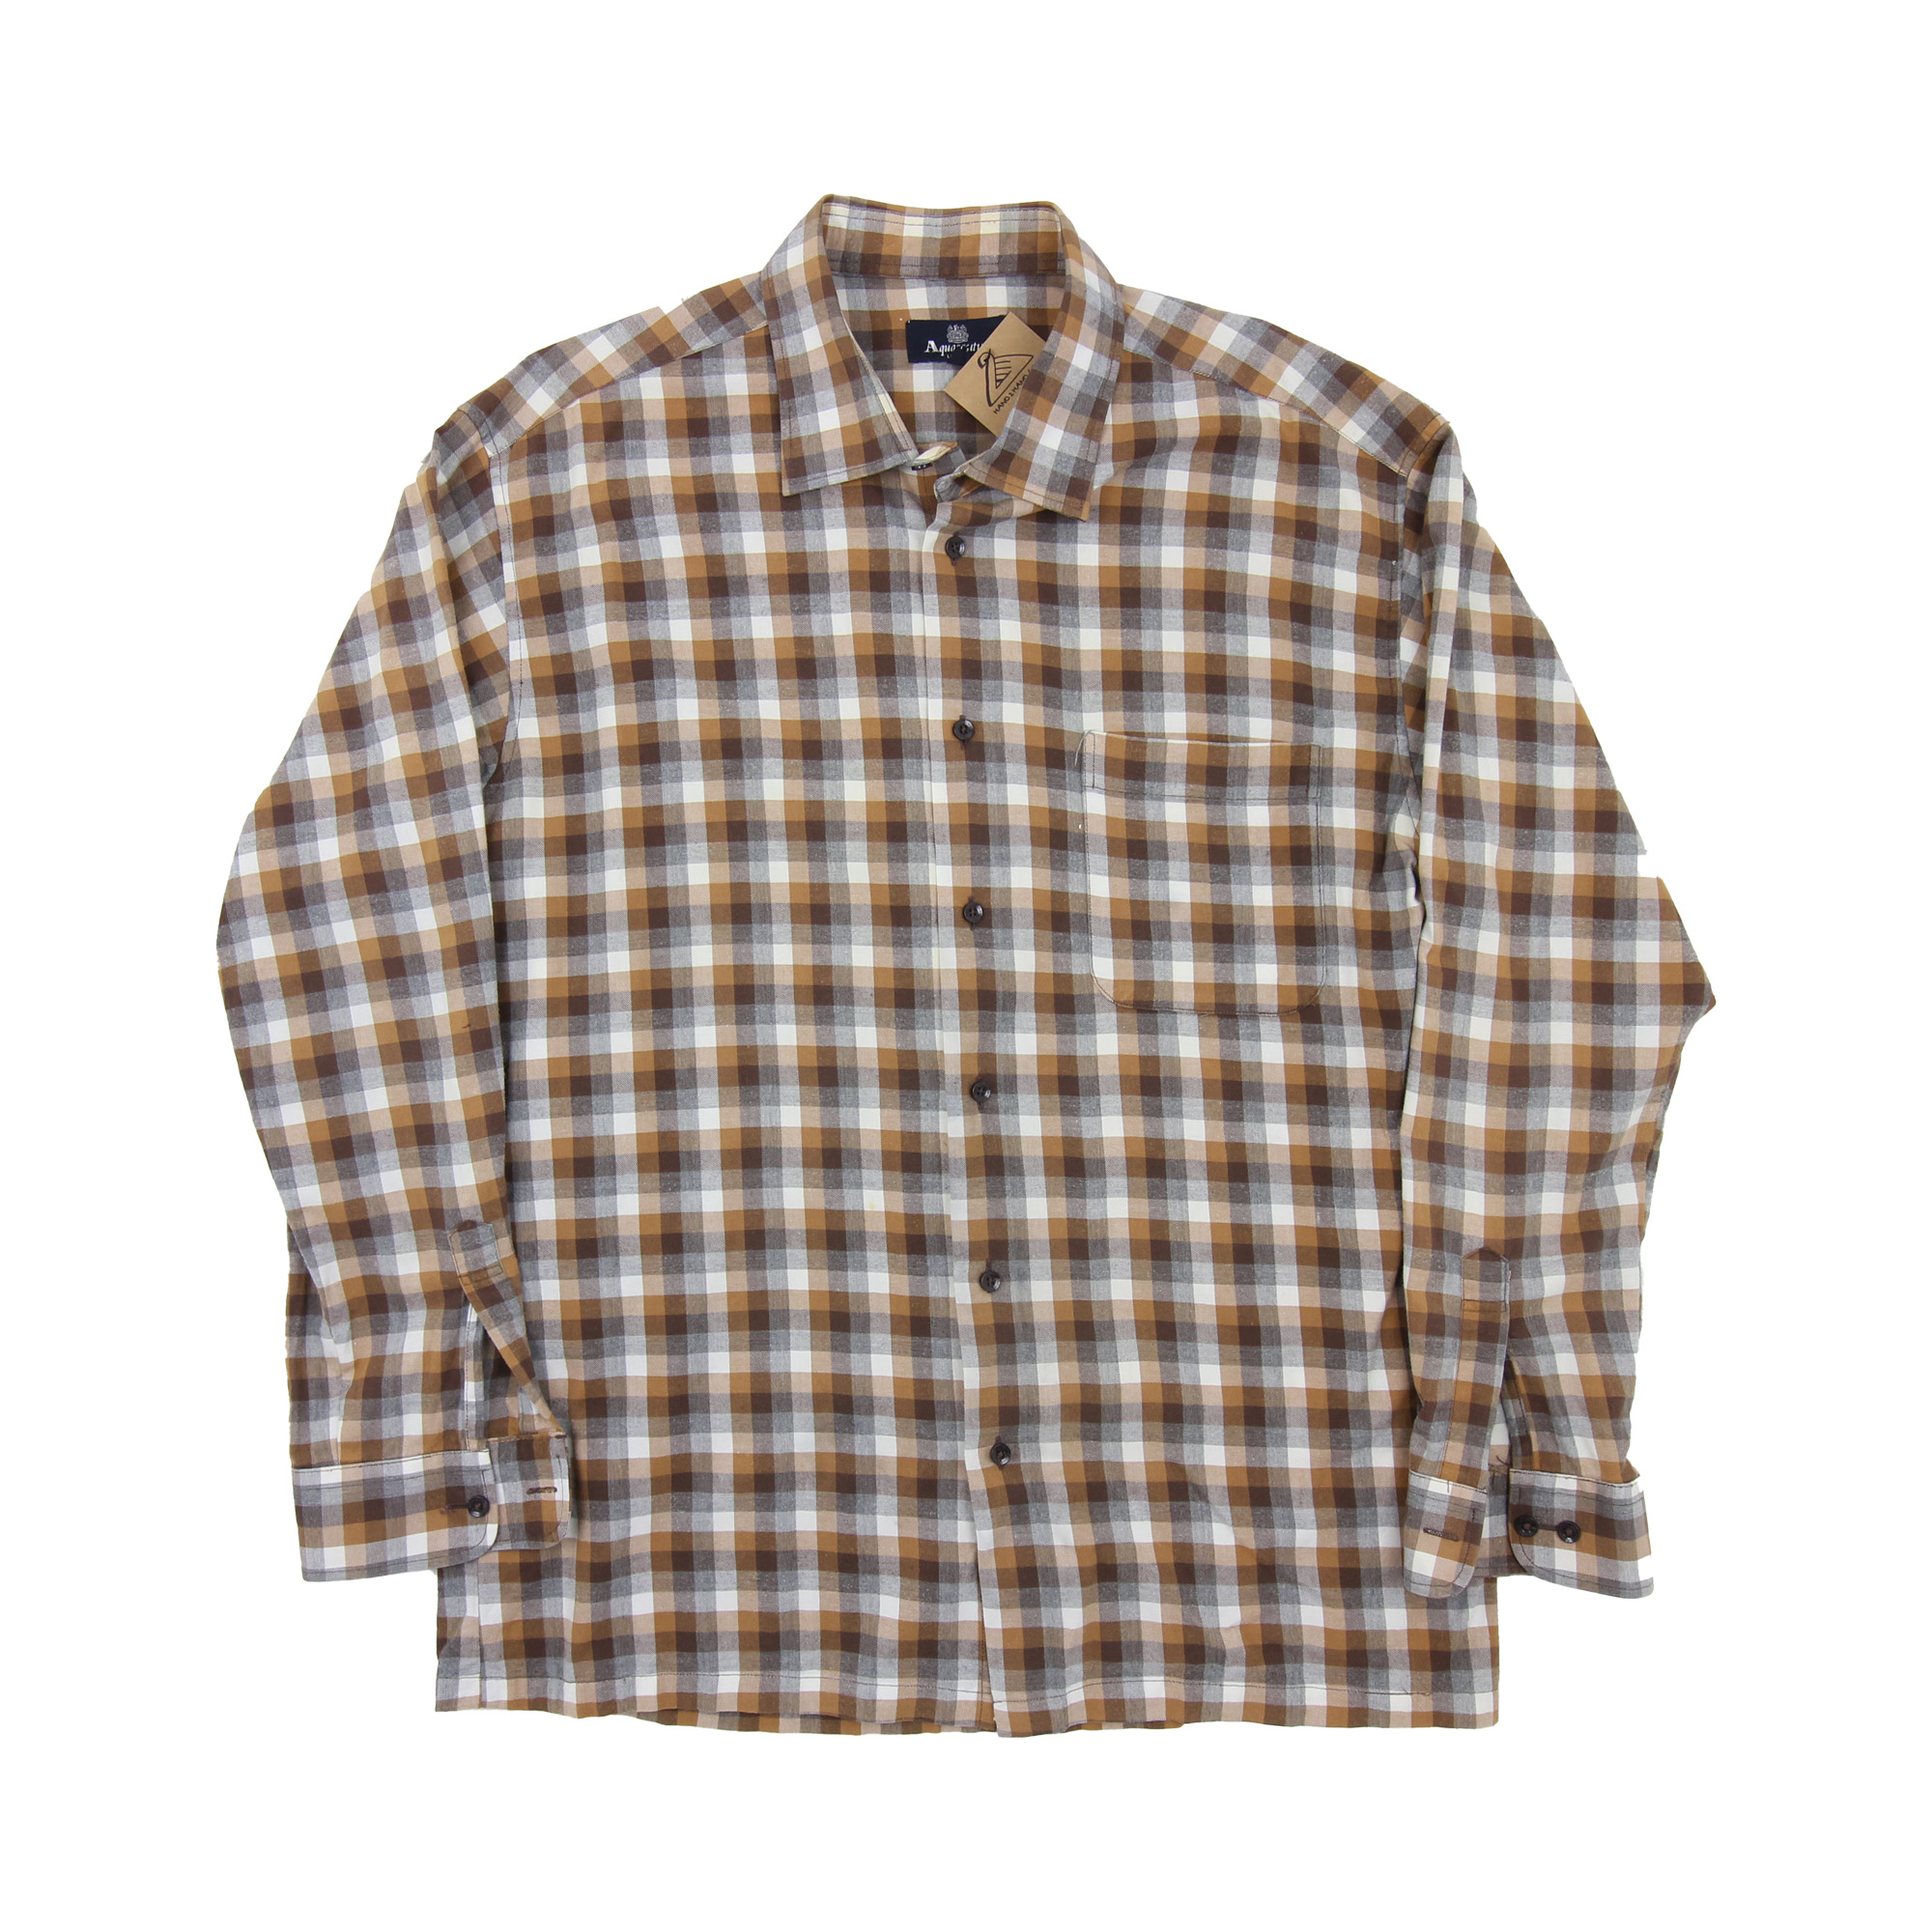 Aquascutum Long Sleeve Shirt - XL | H0466